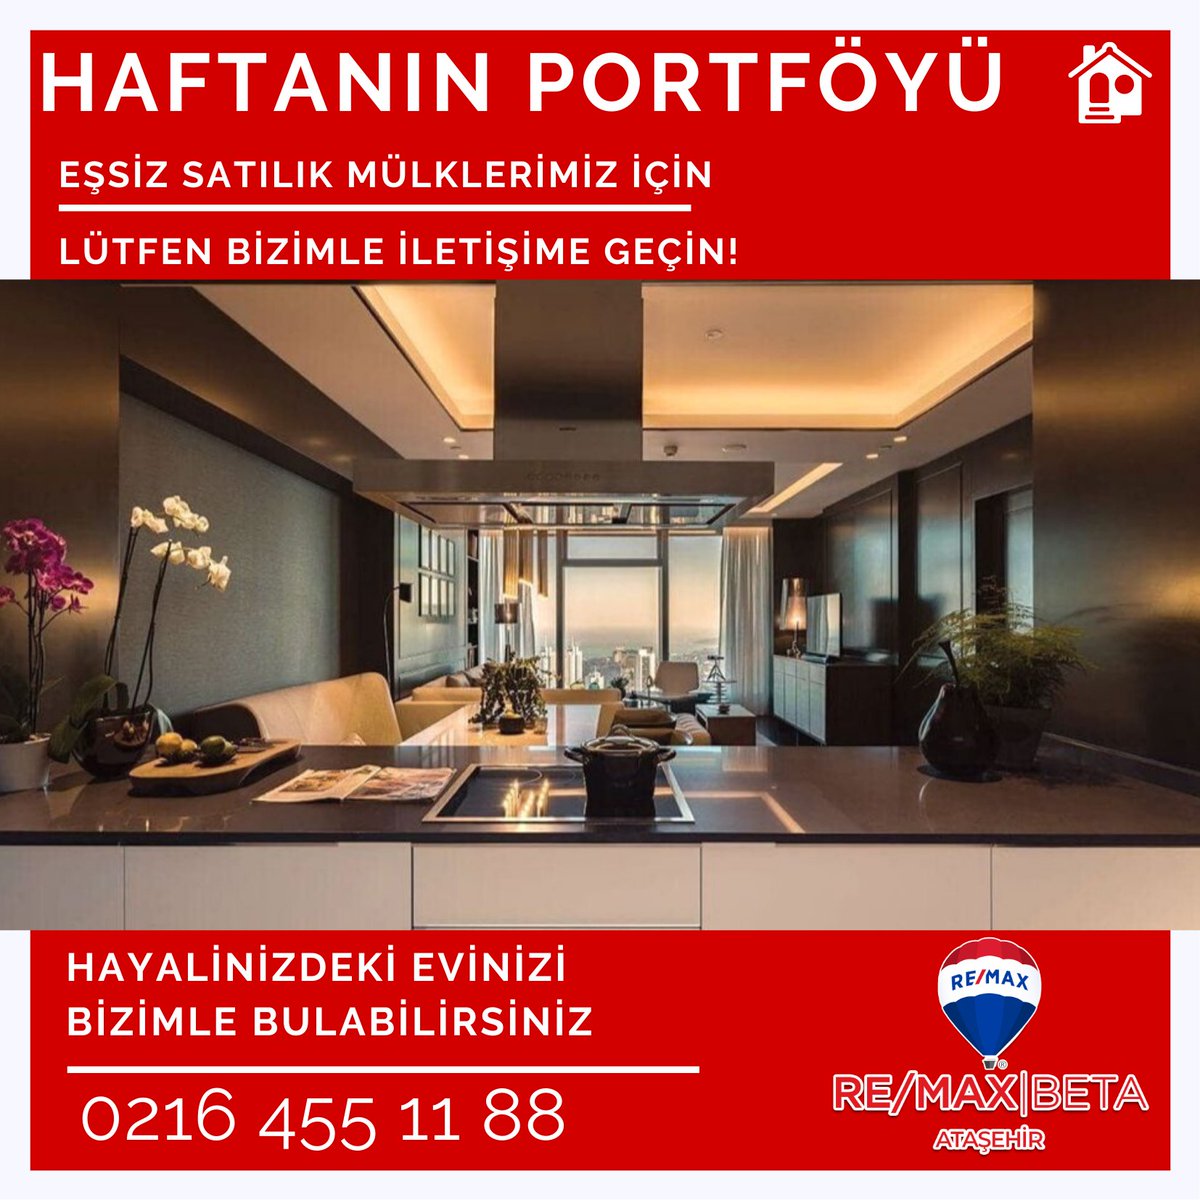 Bu muhteşem daireleri kaçırmak istemiyorsanız hemen arayın!
☎️ 0216 455 11 88
#istanbul #mecidiyeköy #satılık #şişli #emlak #fairmontquasar #ziraatbankasi